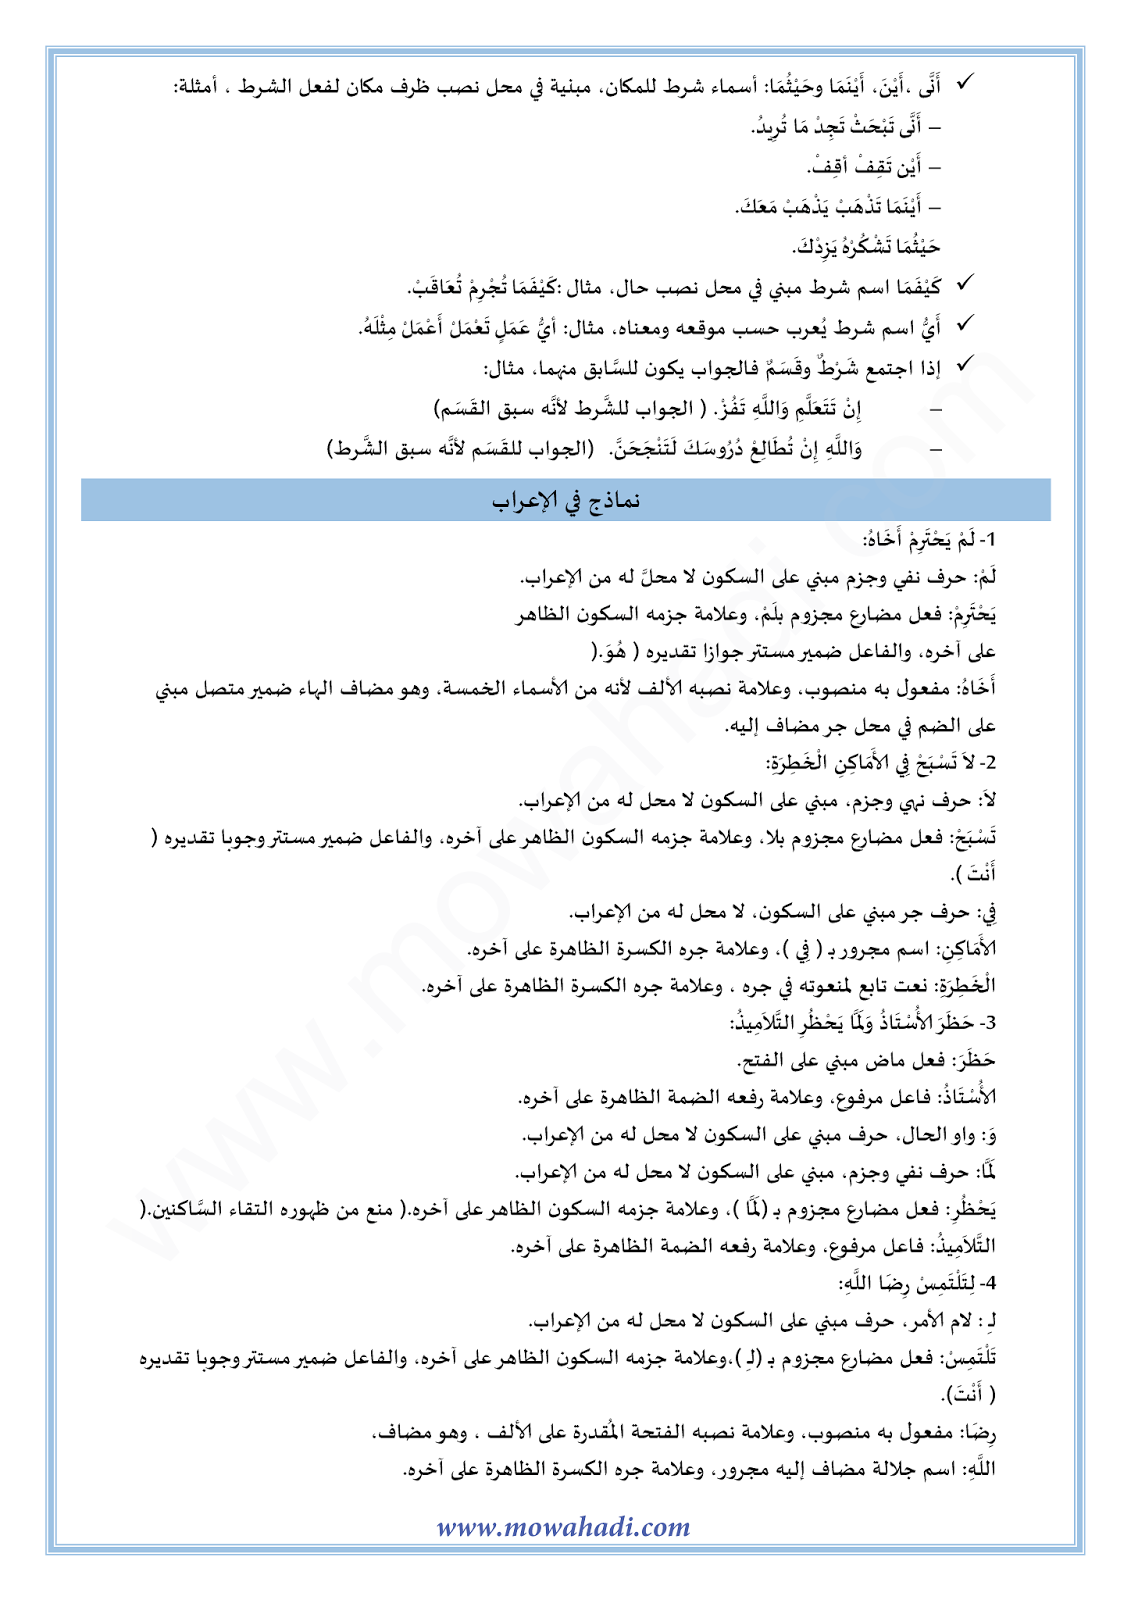 الدرس اللغوي اعراب الفعل المضارع : جزمه للسنة الأولى اعدادي في مادة اللغة العربية 11-cours-dars-loghawi1_003